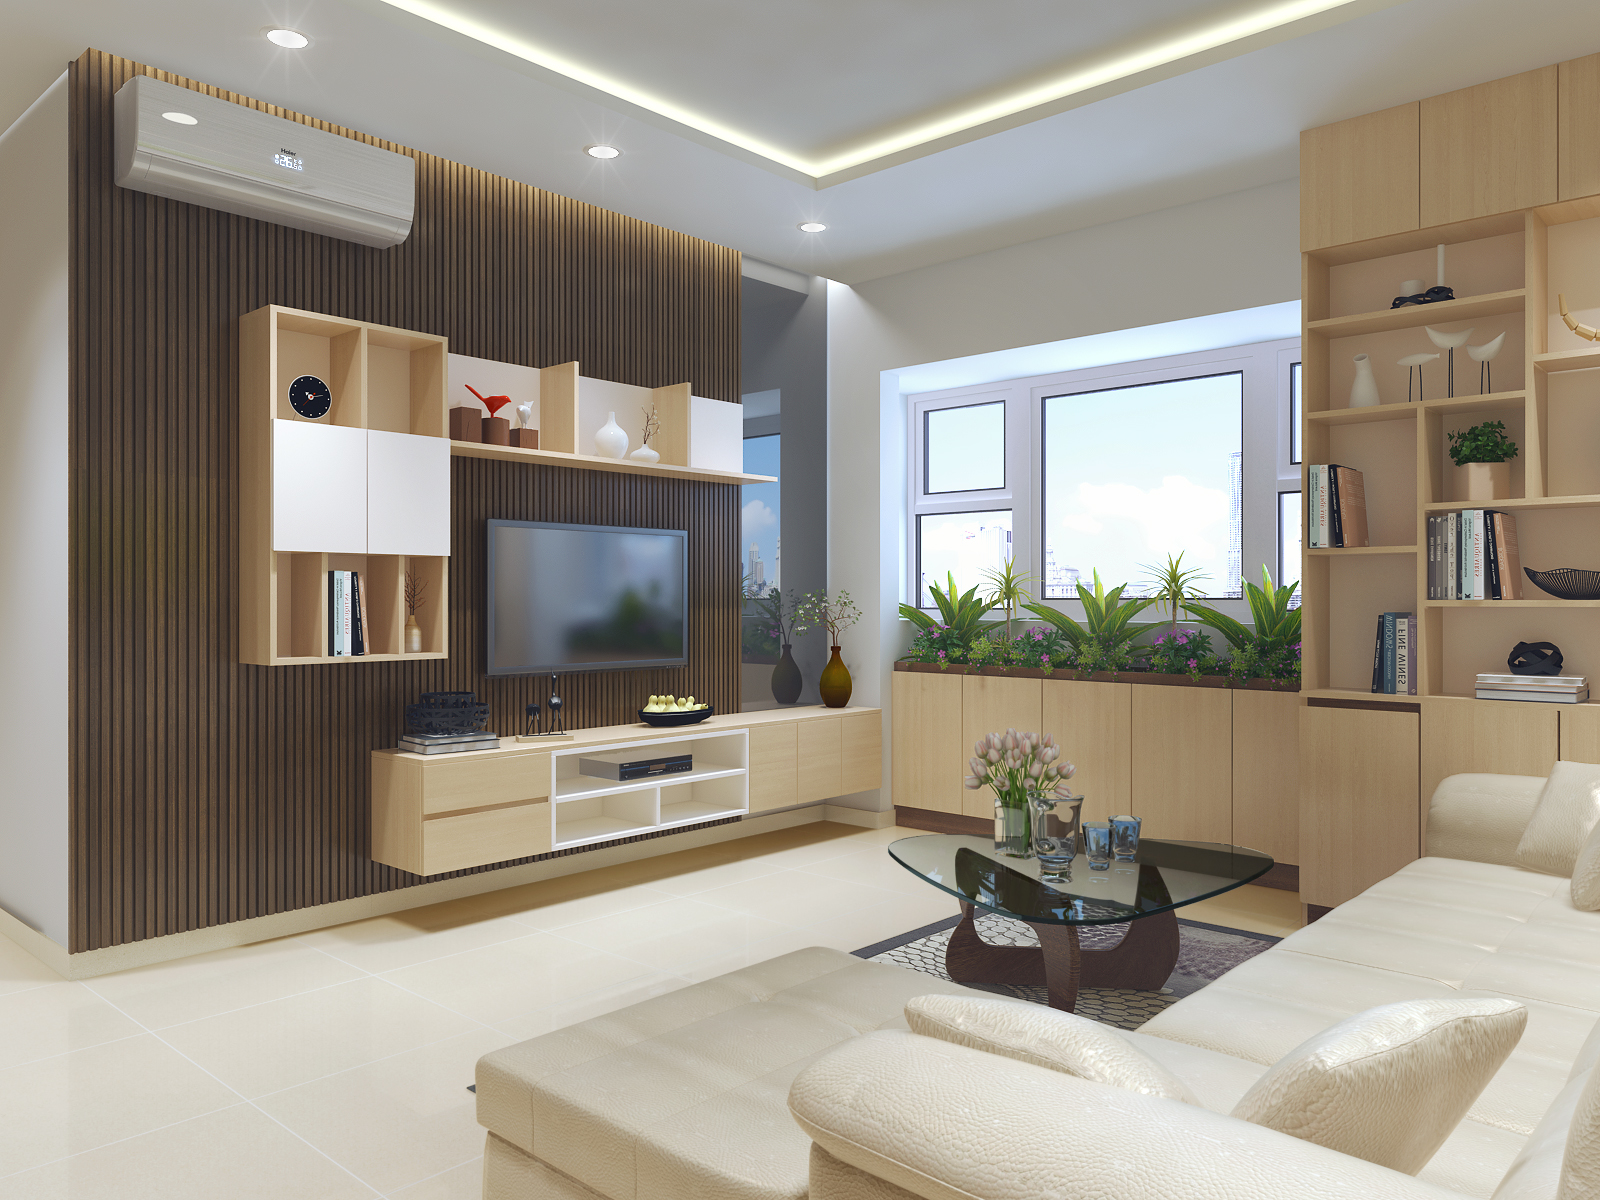 Thiết kế nội thất căn hộ hiện đại để tối ưu hóa công năng phòng khách